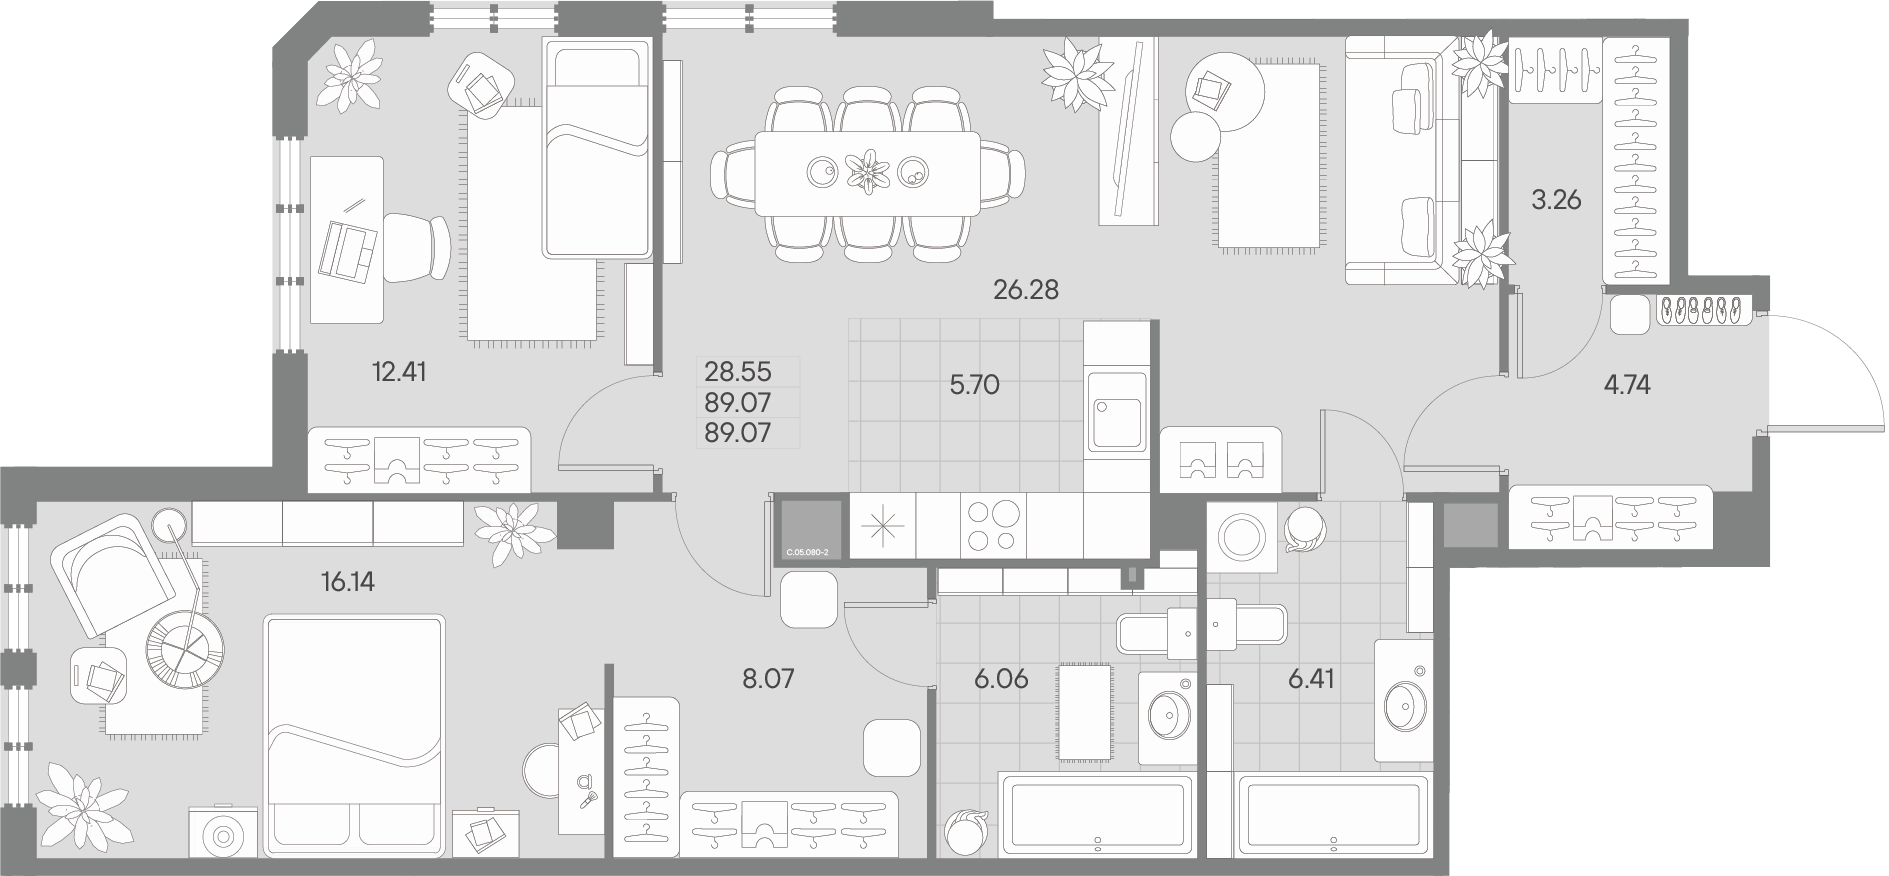 1-комнатная квартира  №80-2 в AMO: 89.07 м², этаж 5 - купить в Санкт-Петербурге